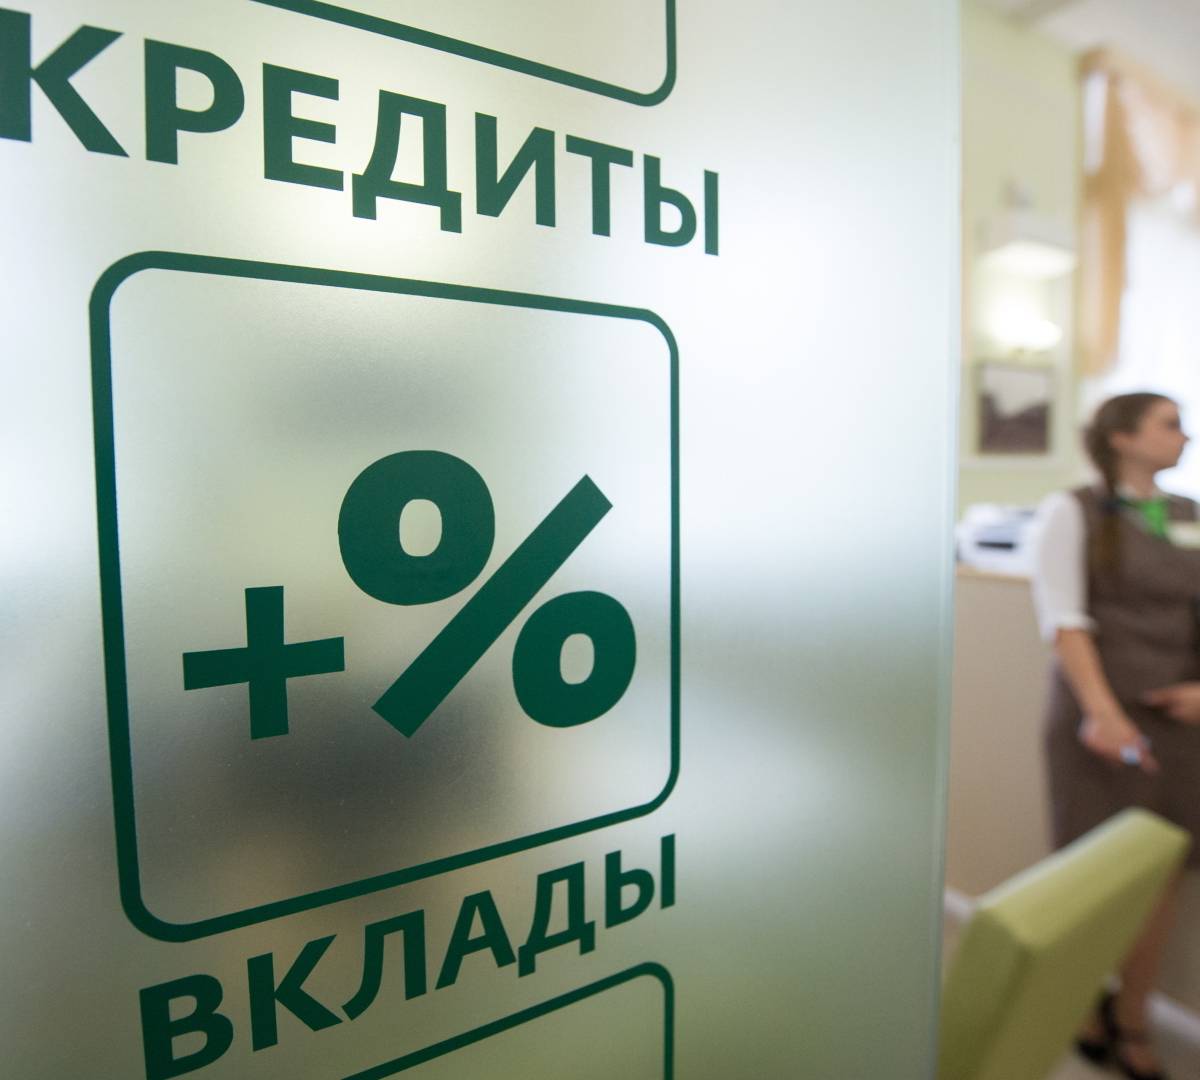 Сбер повышает ставку по ипотеке, россияне перестают платить за кредиты, "Новые люди" предлагают деньги вместо абортов